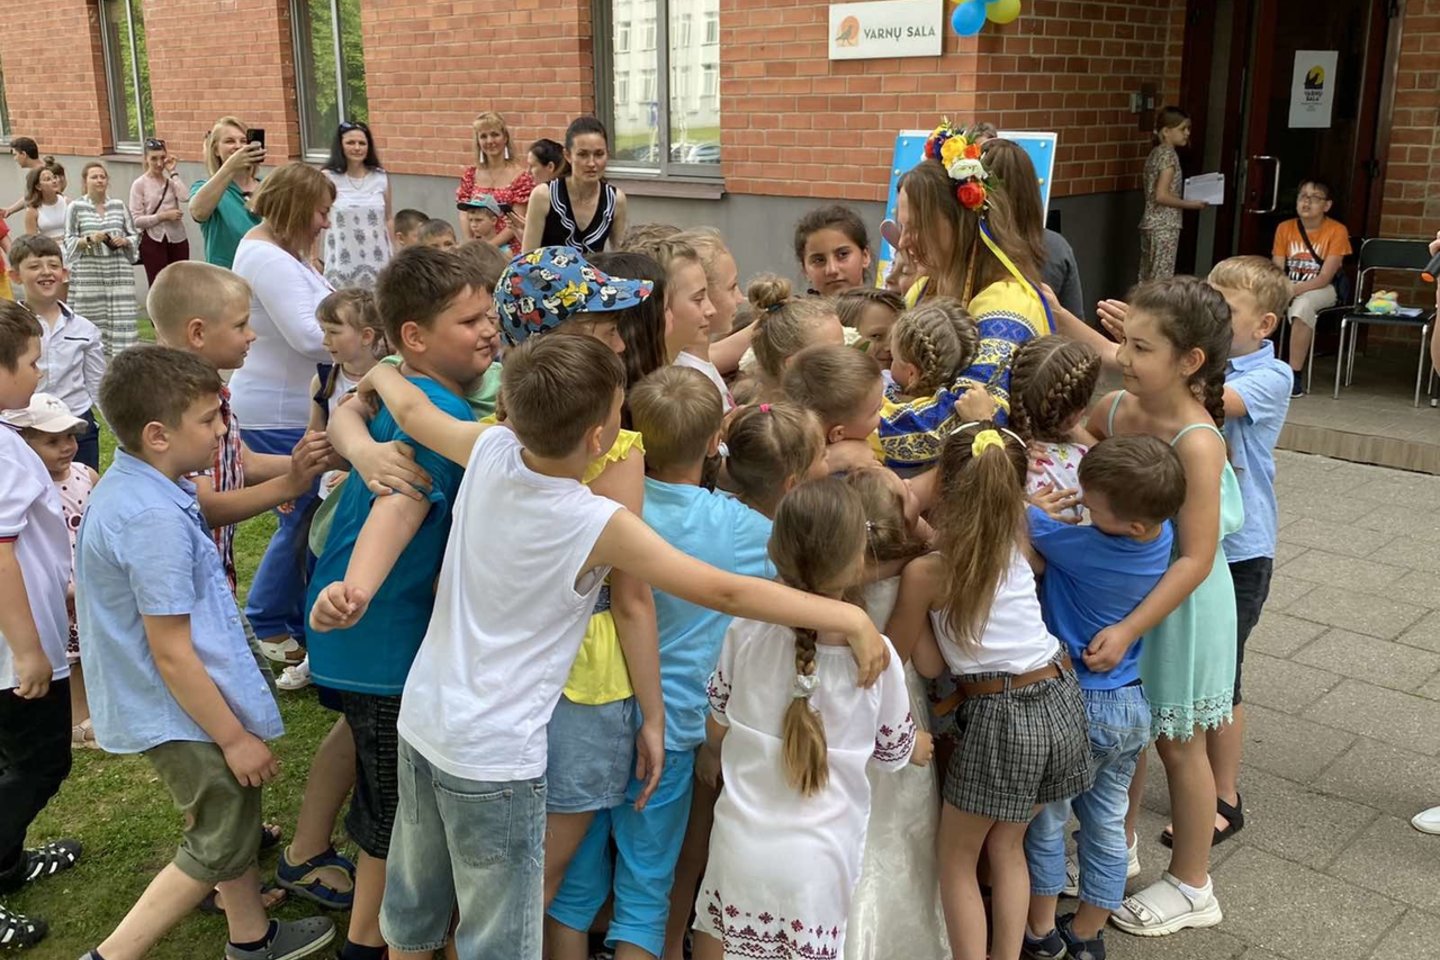  Birželio pradžioje Vilniuje veiklą pradėjo Ukrainos mokiniams skirta vasaros mokykla „Varnų sala“.<br> Asmeninio albumo nuotr.